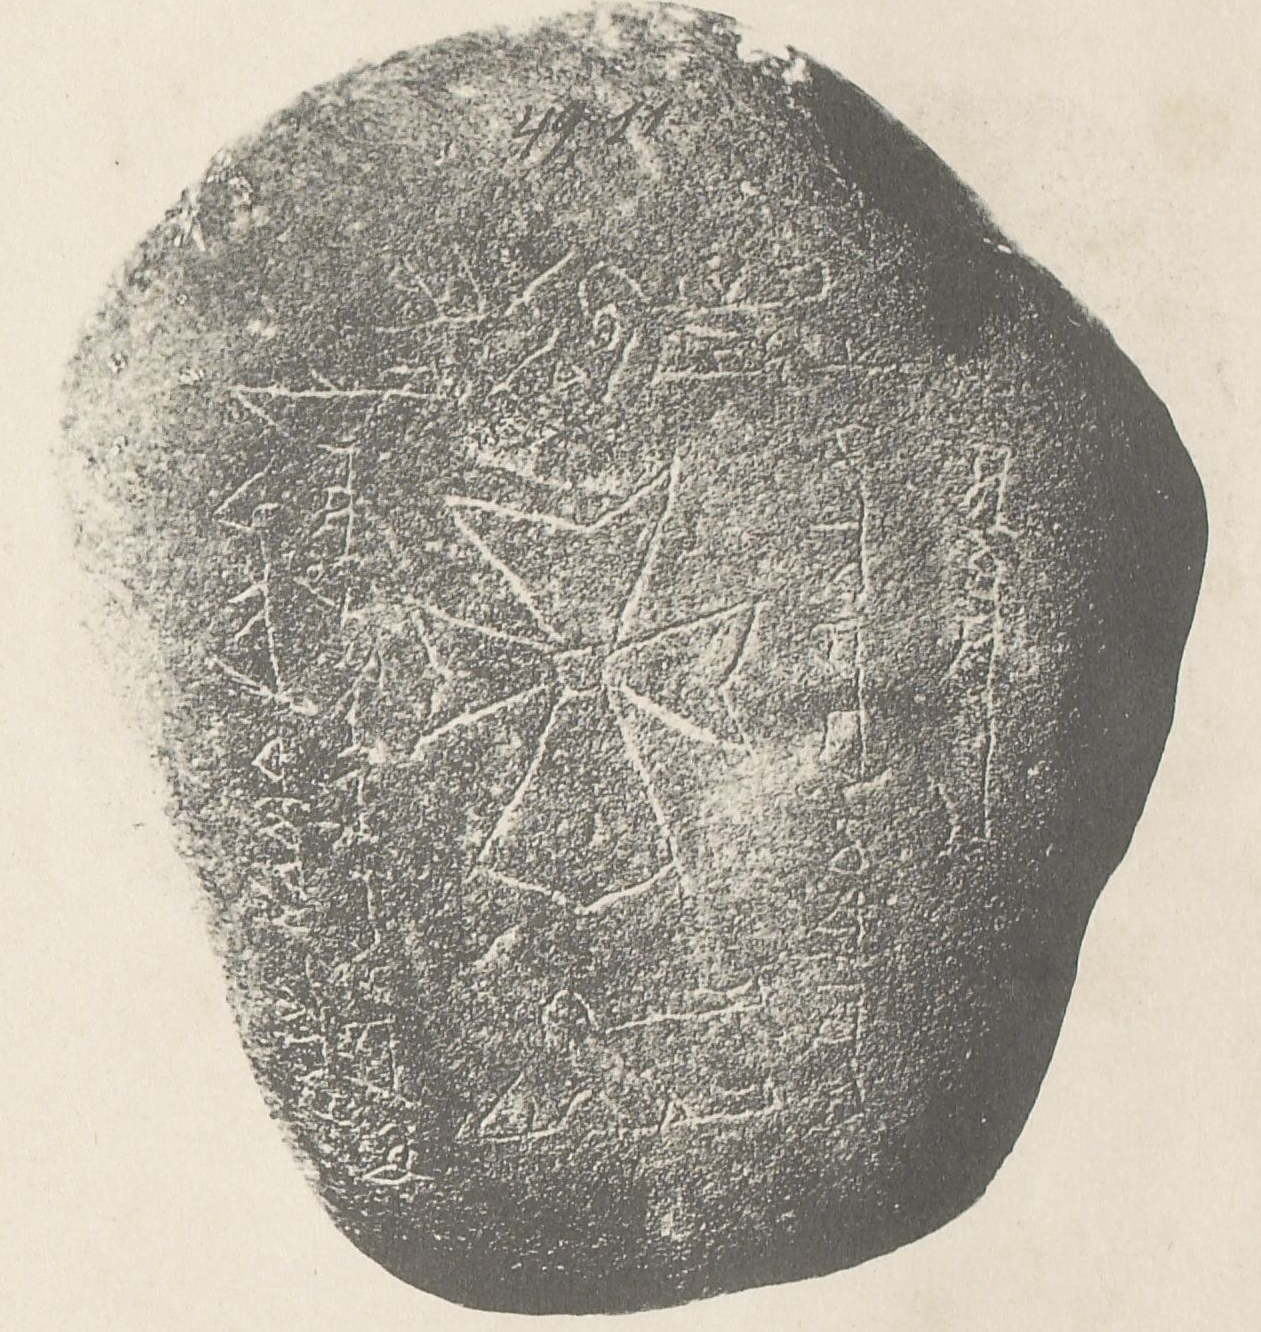 A 19-ik századi feltárások során megtalált sírkő, amelyen a "dögvészben halt meg" felirat olvasható